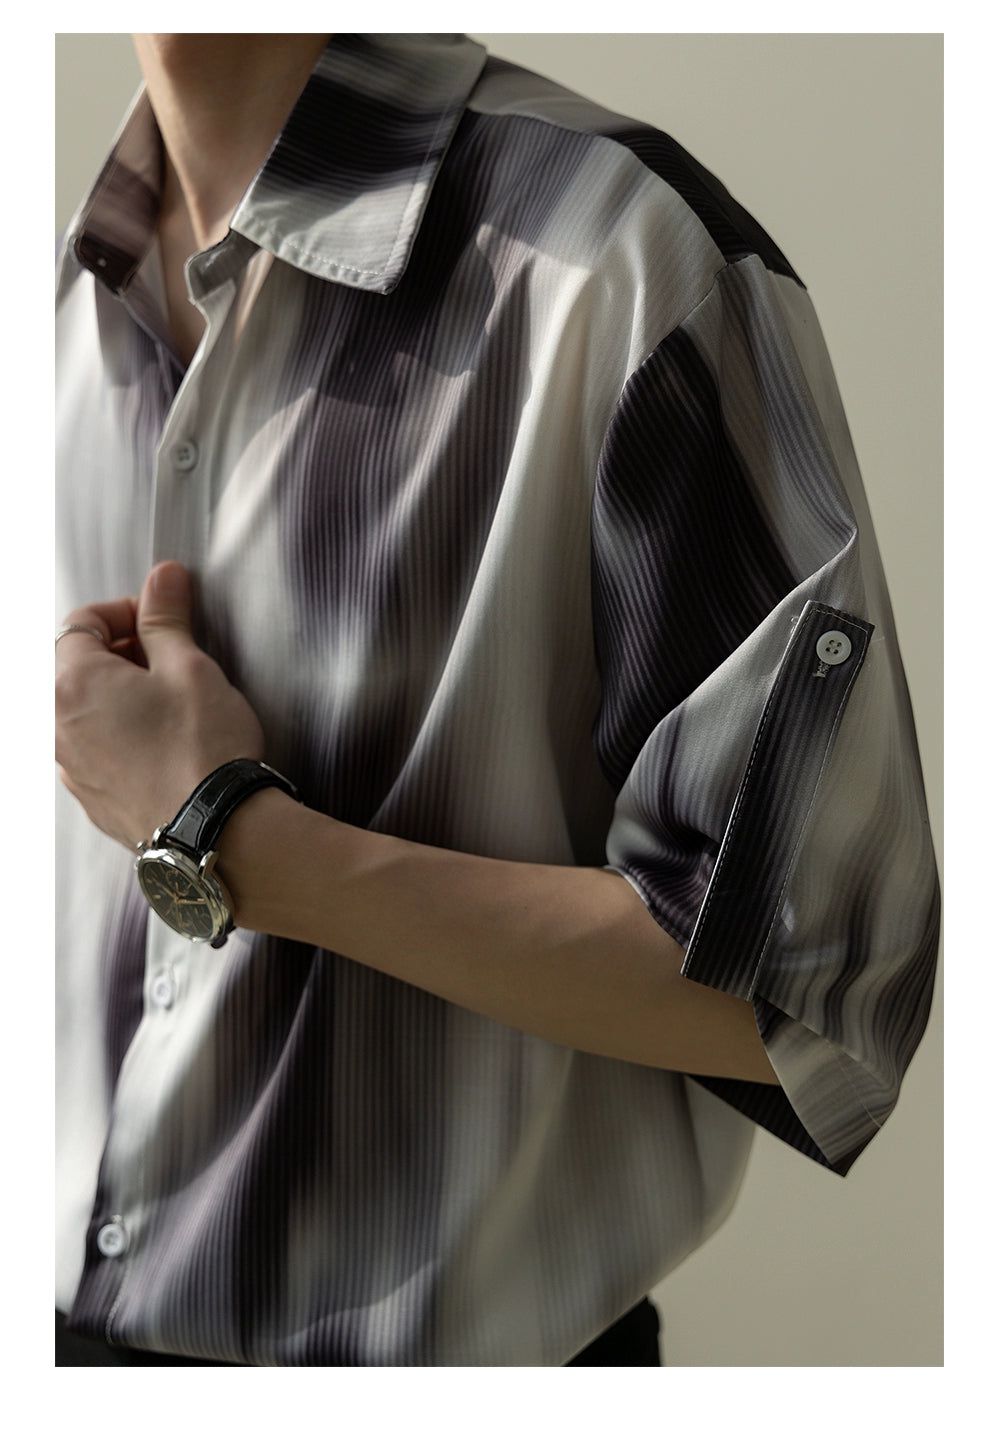 Zhou Classy Lines Buttoned Shirt-korean-fashion-Shirt-Zhou's Closet-OH Garments